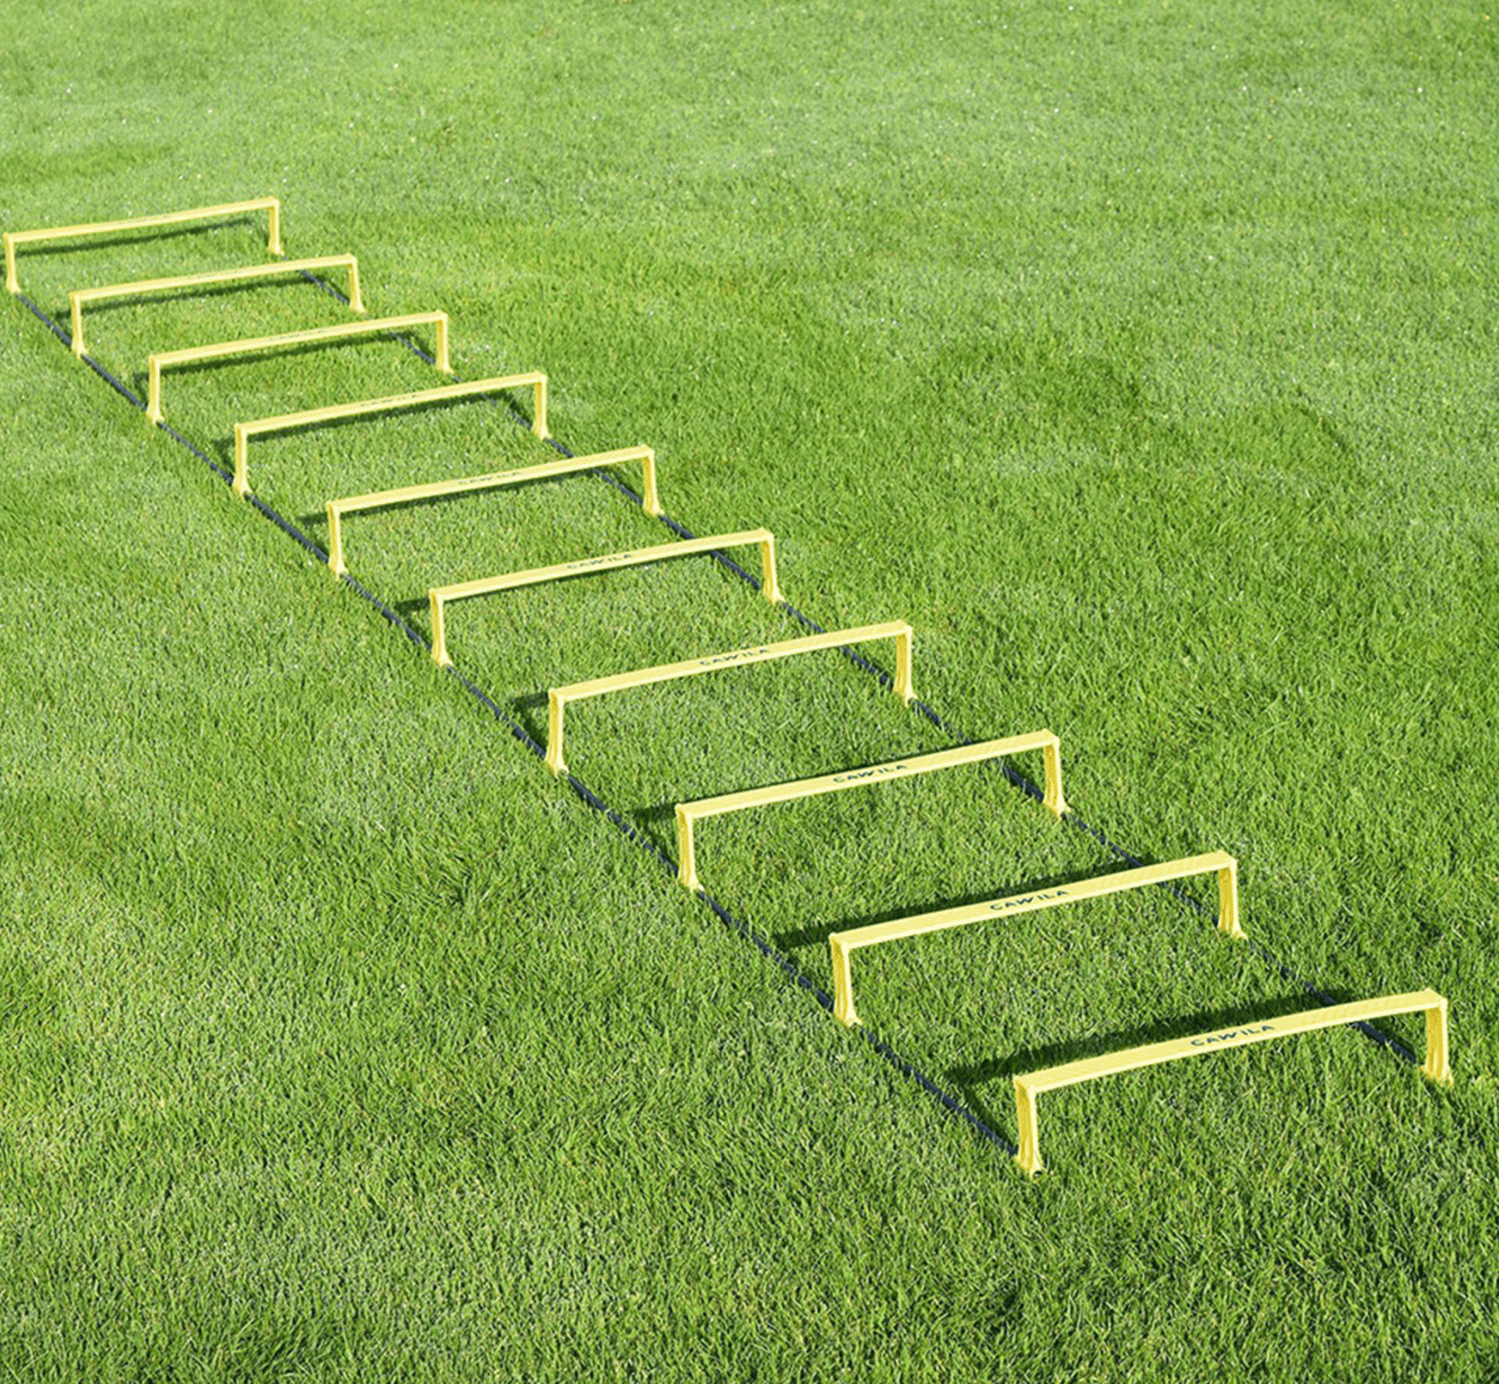 Koordinační žebřík Cawila Cawila step coordination ladder 10 bars